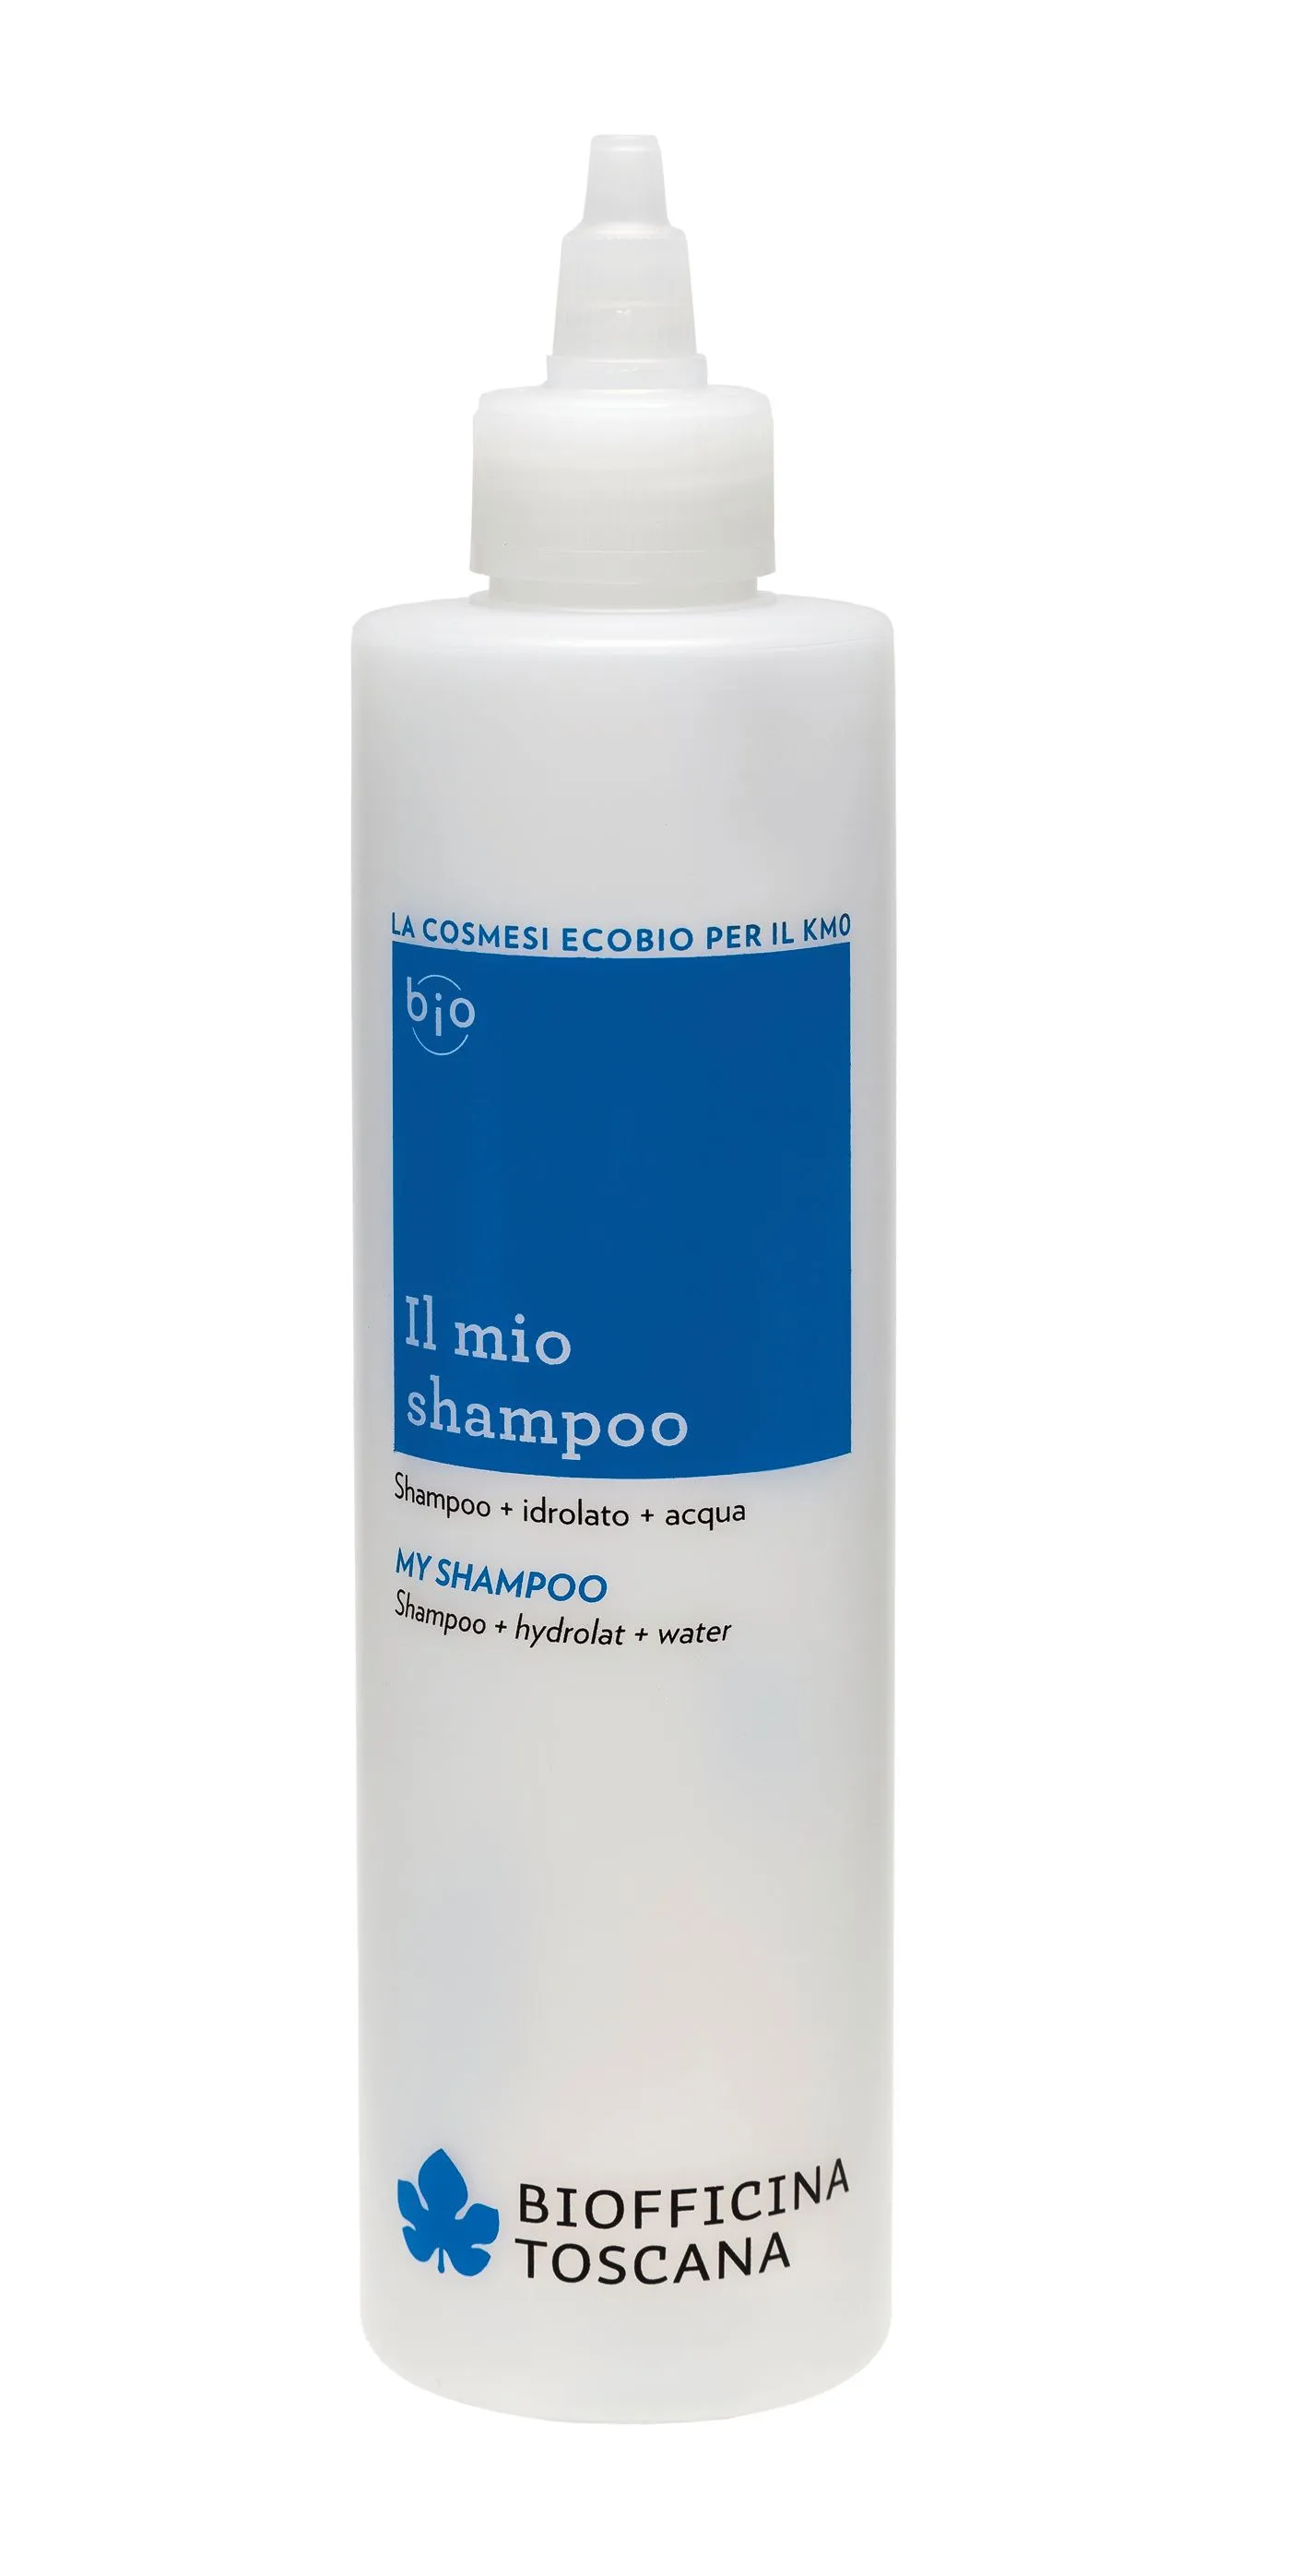 Biofficina Toscana My shampoo Modrá lahvička pro přípravu vlastního šampónu 250 ml